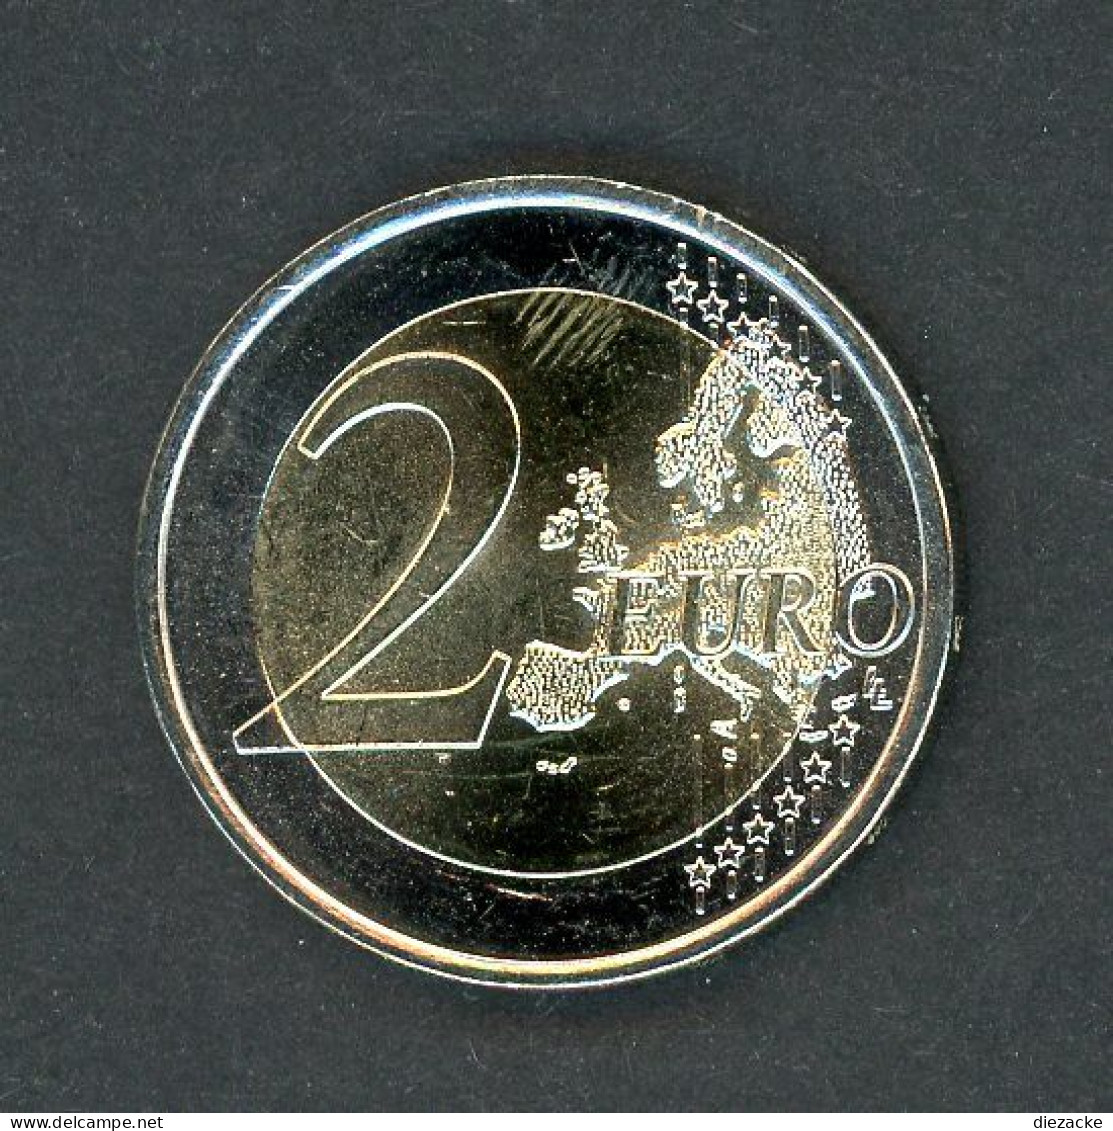 Portugal 2007 2 Euro EU-Ratspräsidentschaft ST (M5010 - Portugal